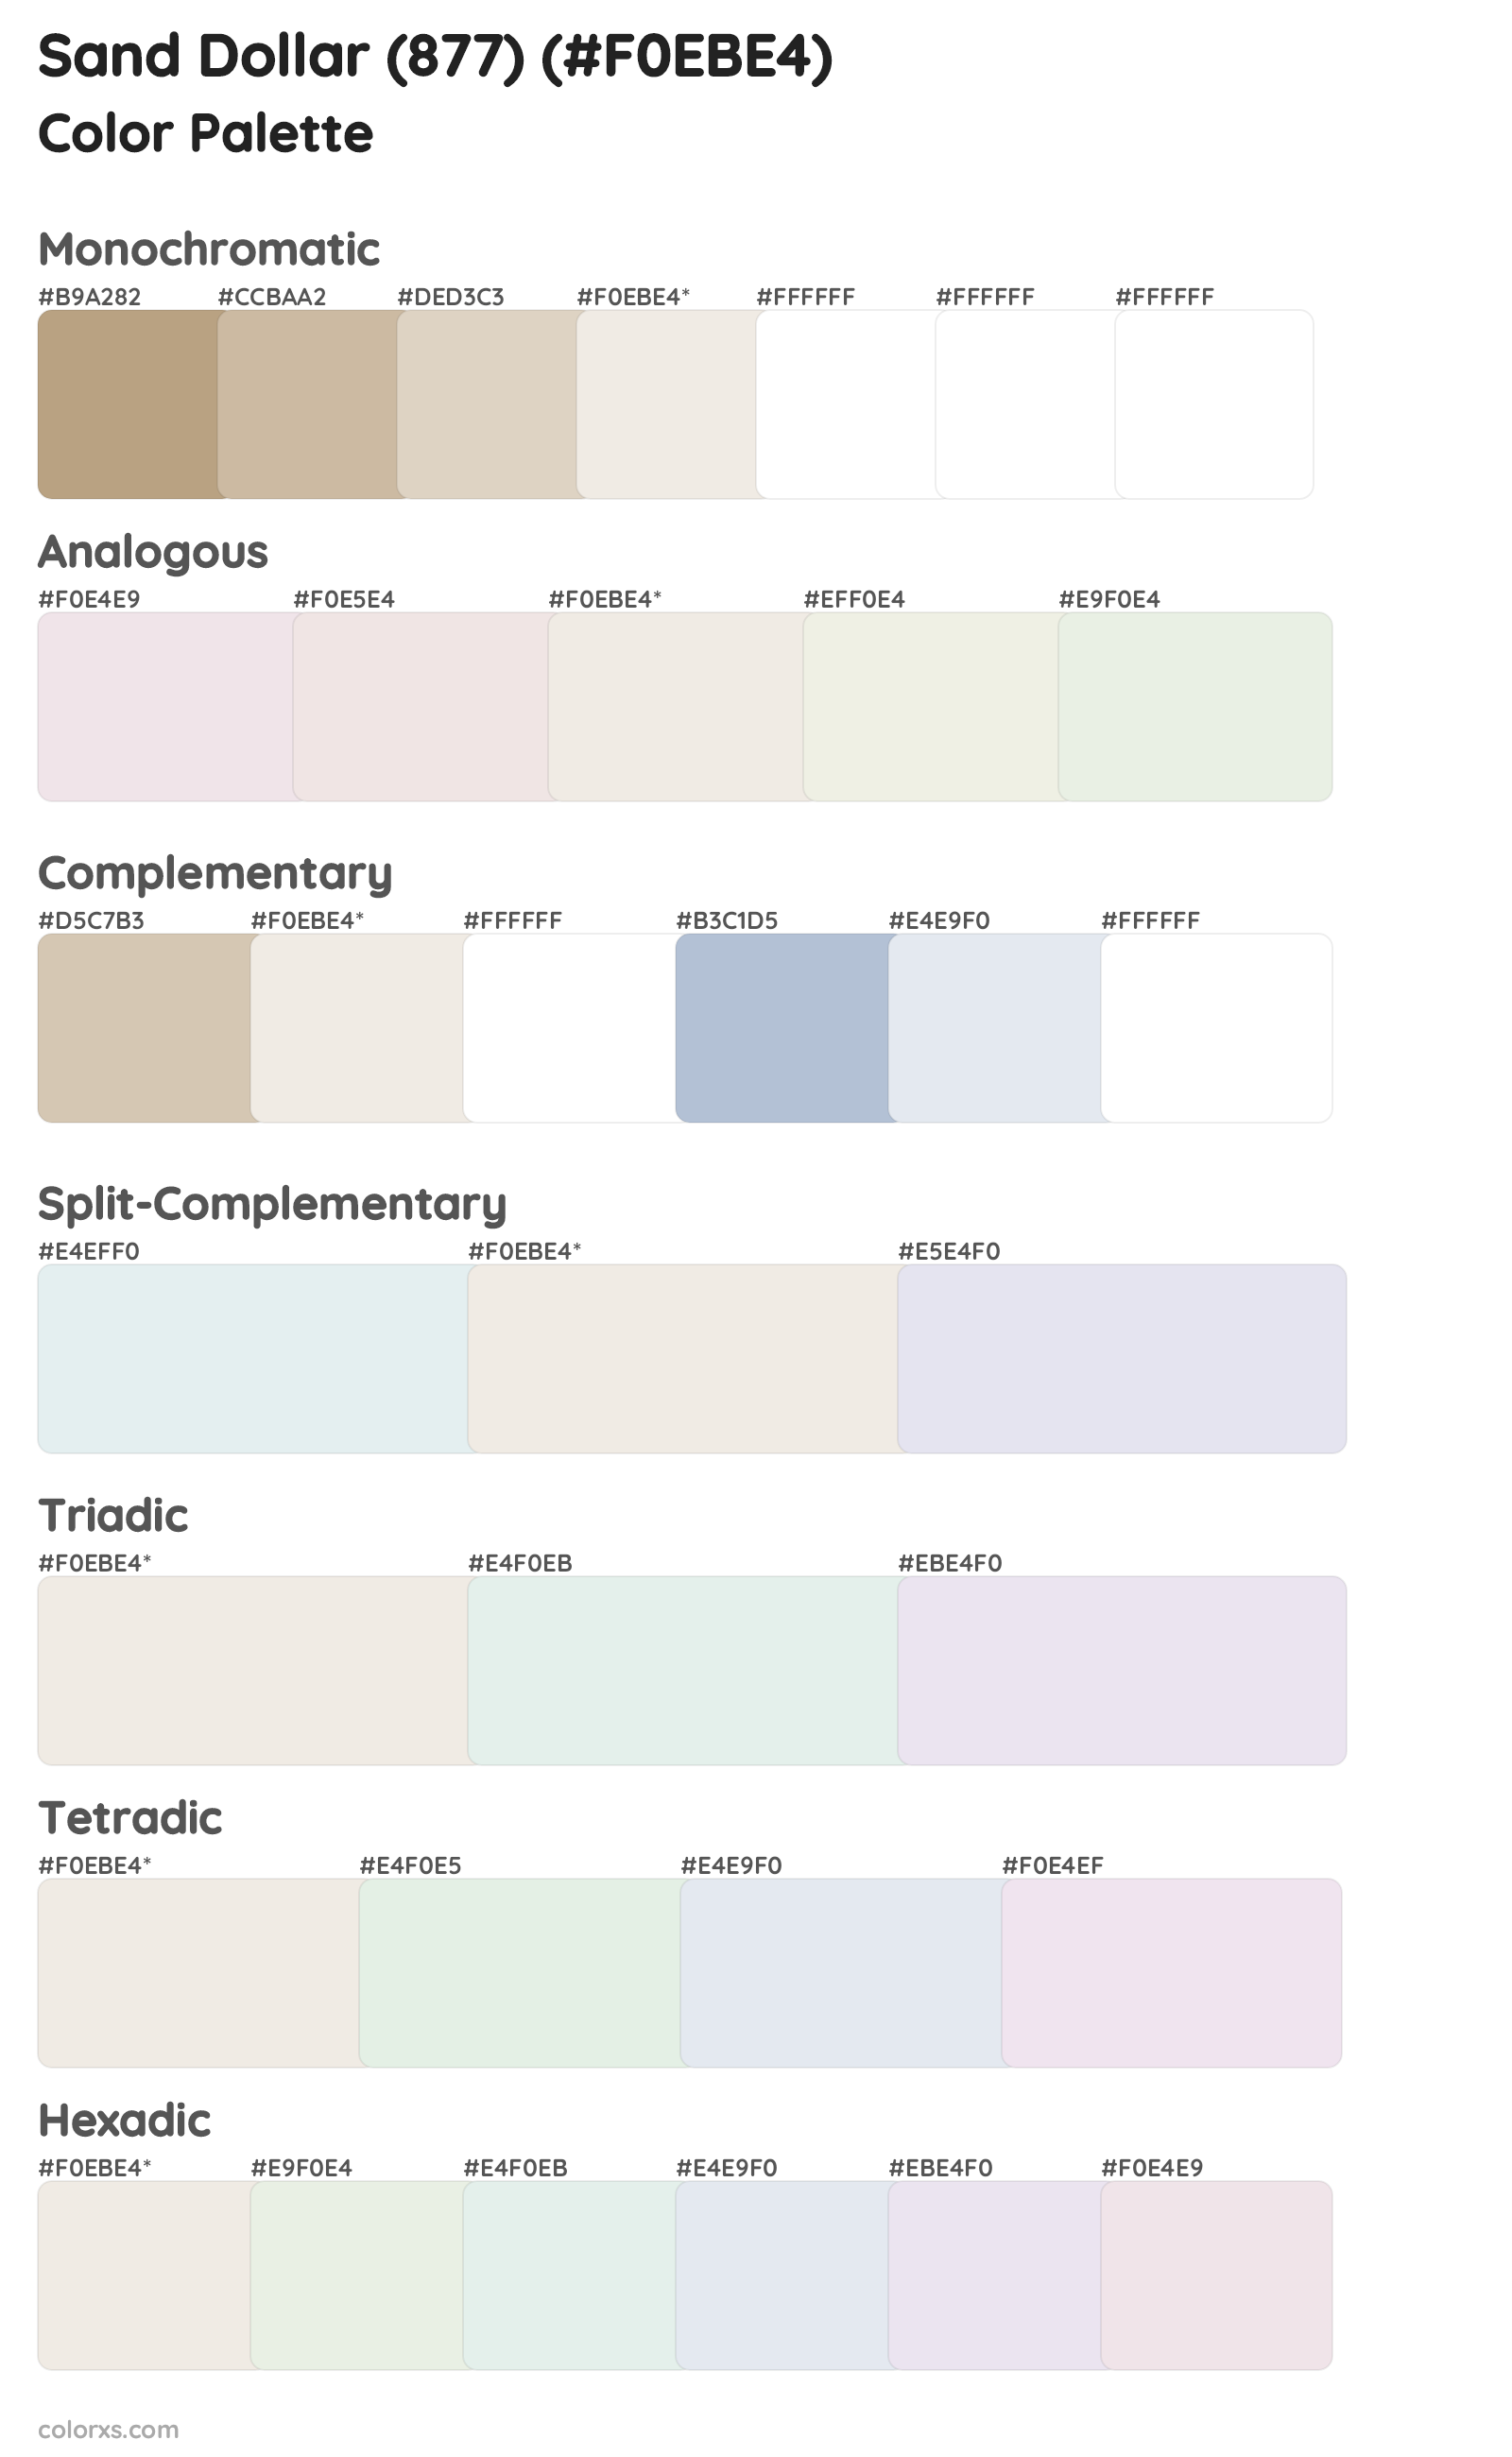 Sand Dollar (877) Color Scheme Palettes